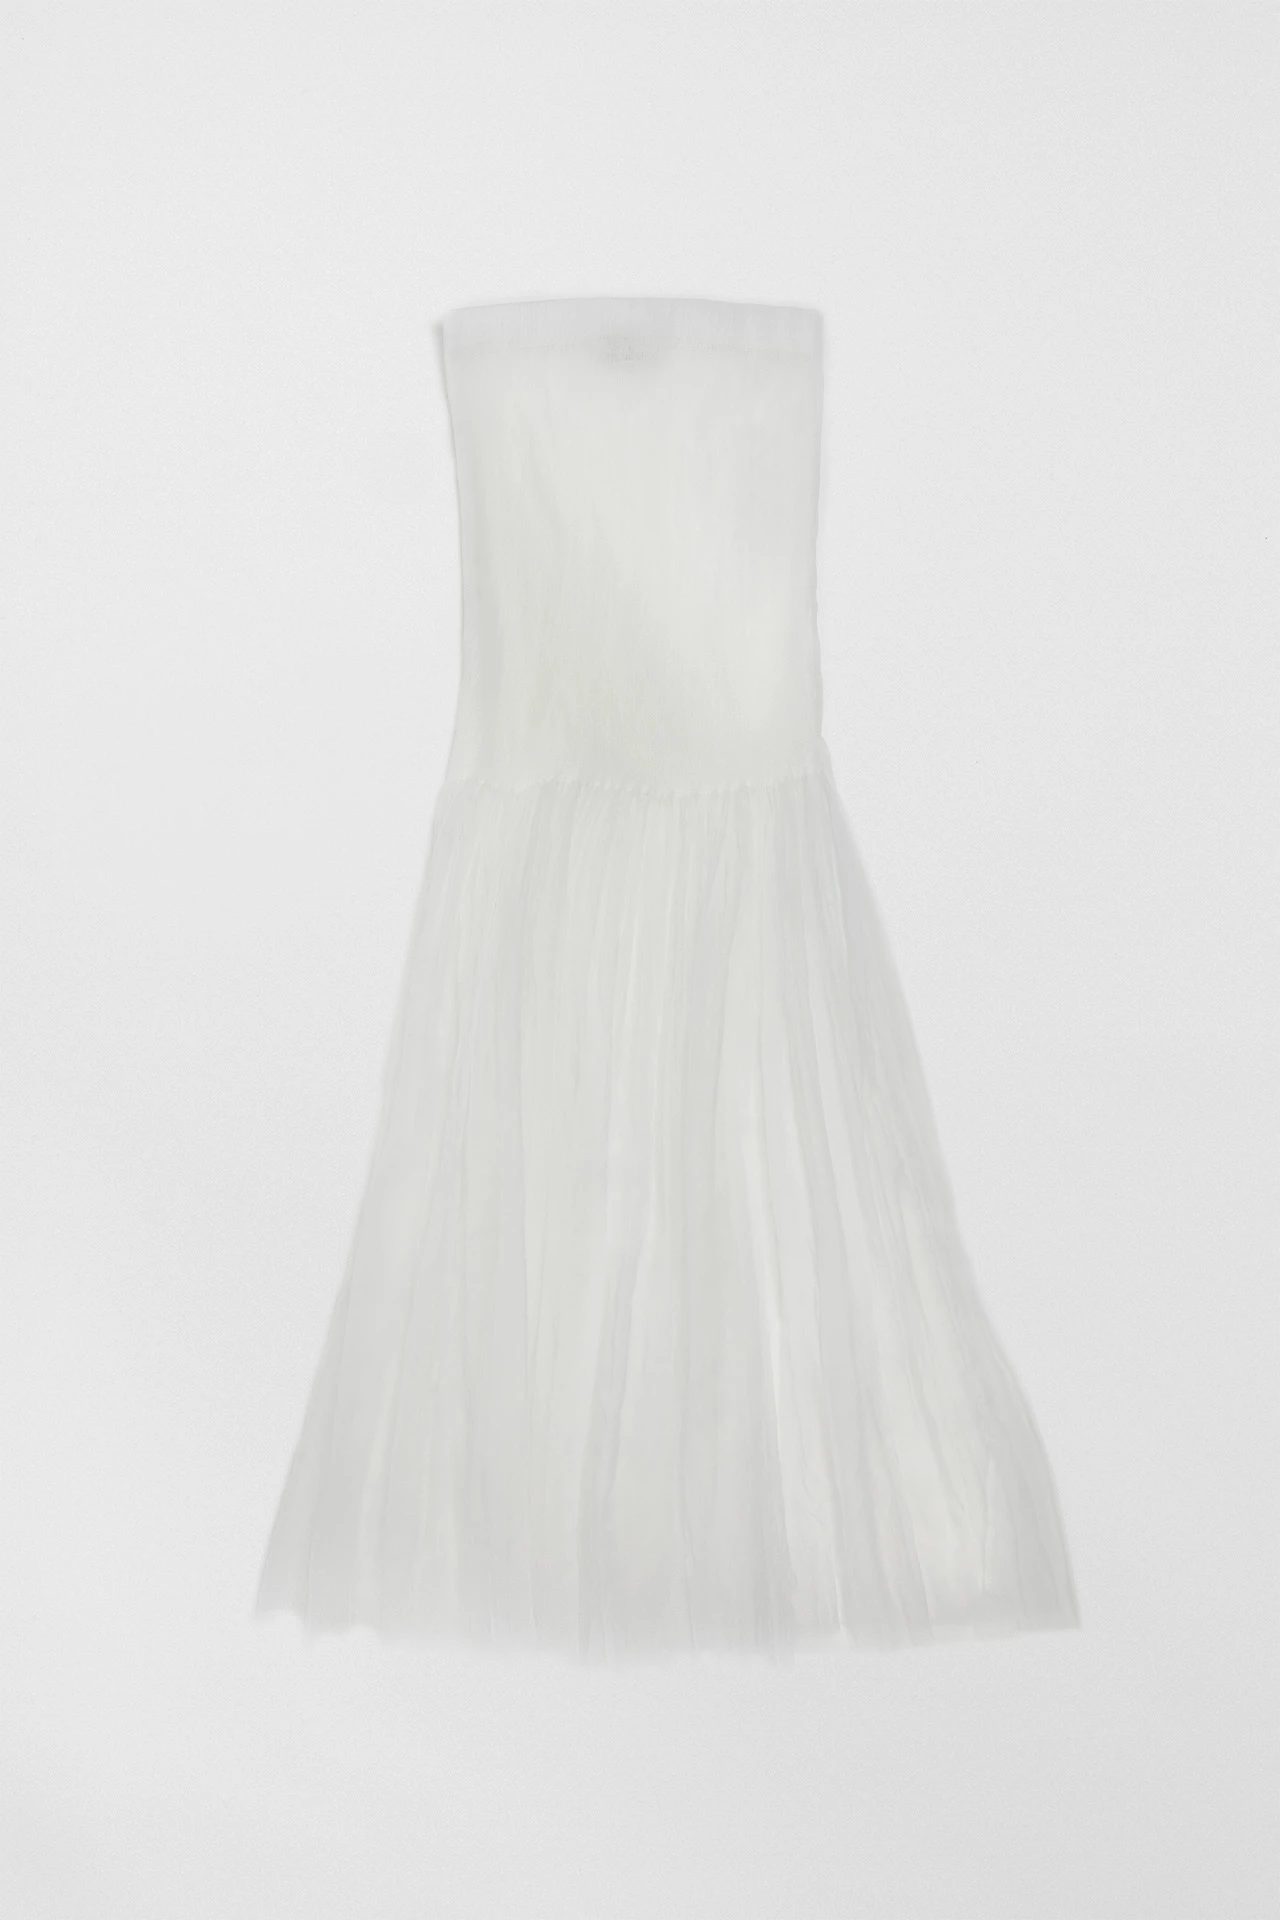 Miista-charlotta-white-dress-01